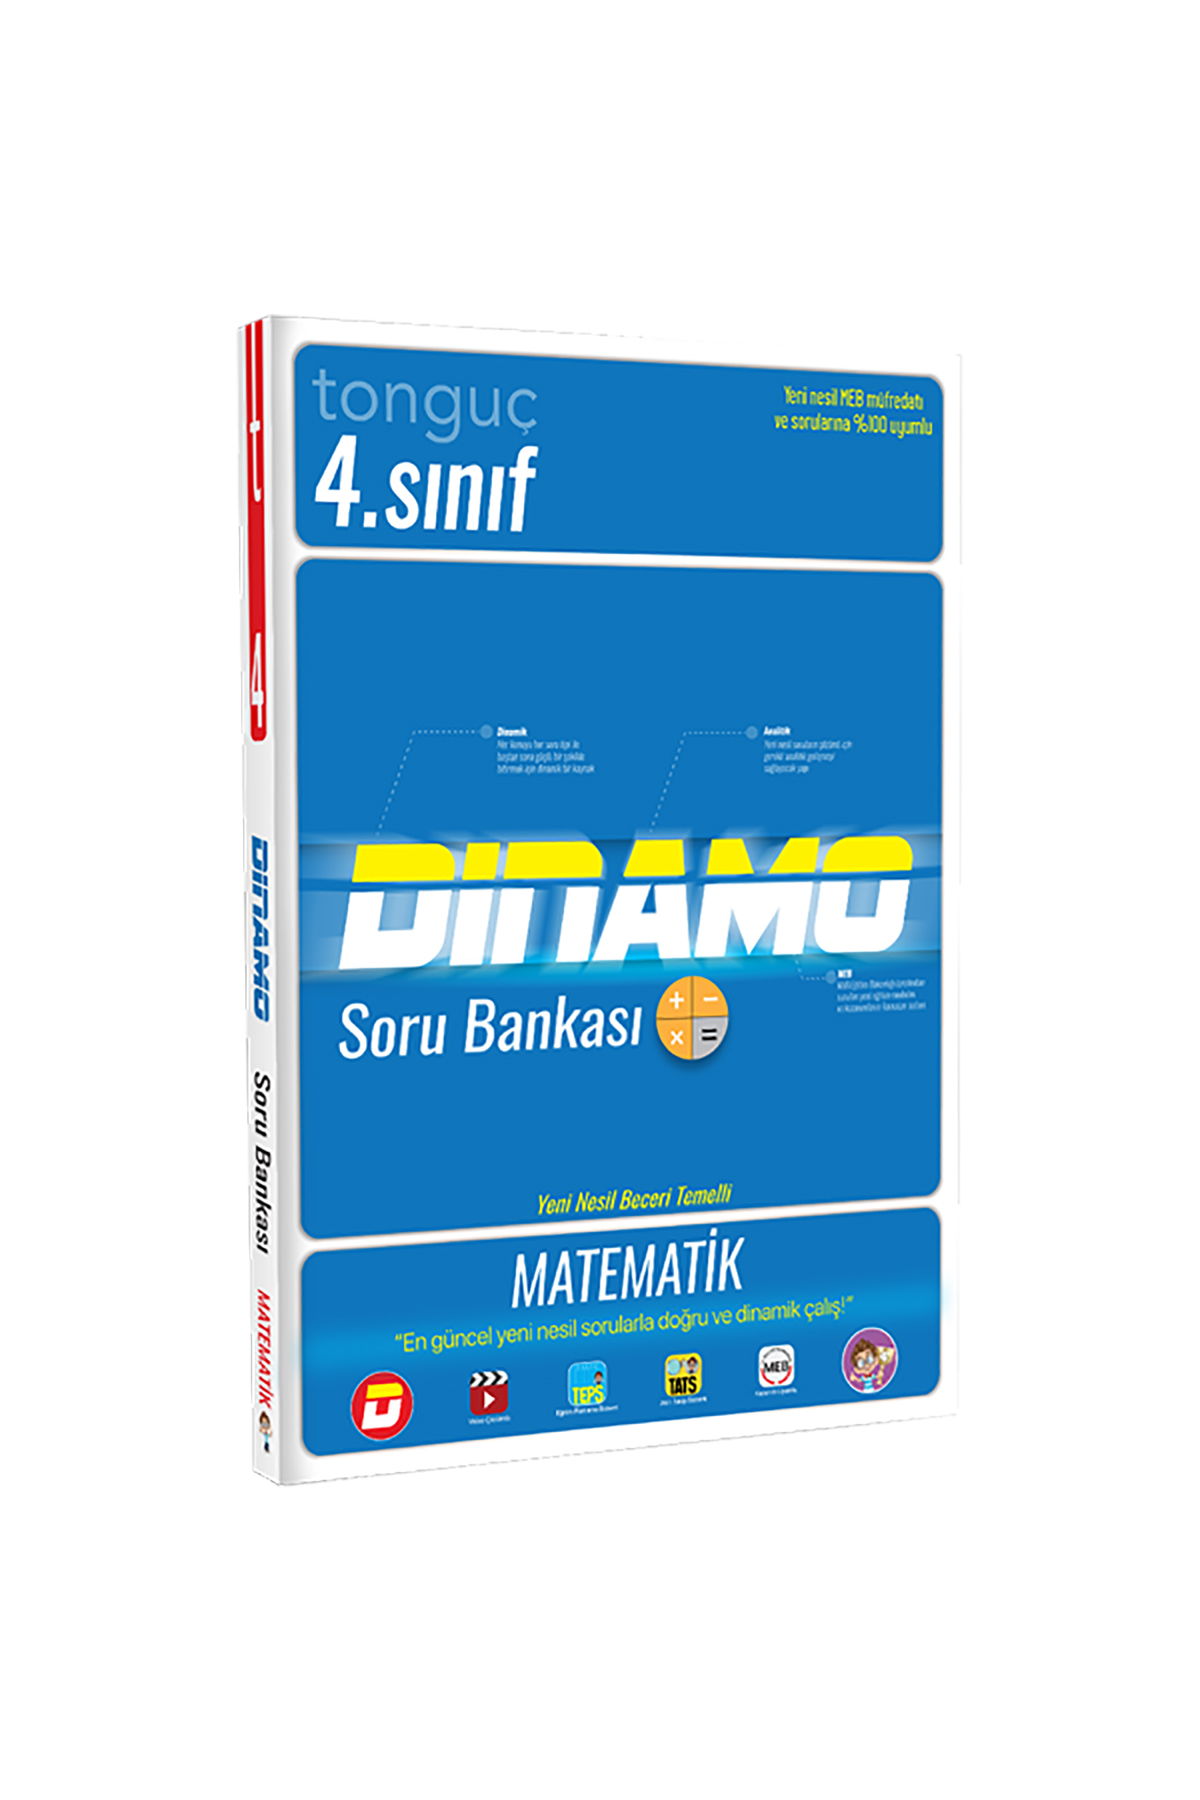 Tonguç Yayınları 4. Sınıf Matematik Dinamo Soru Bankası